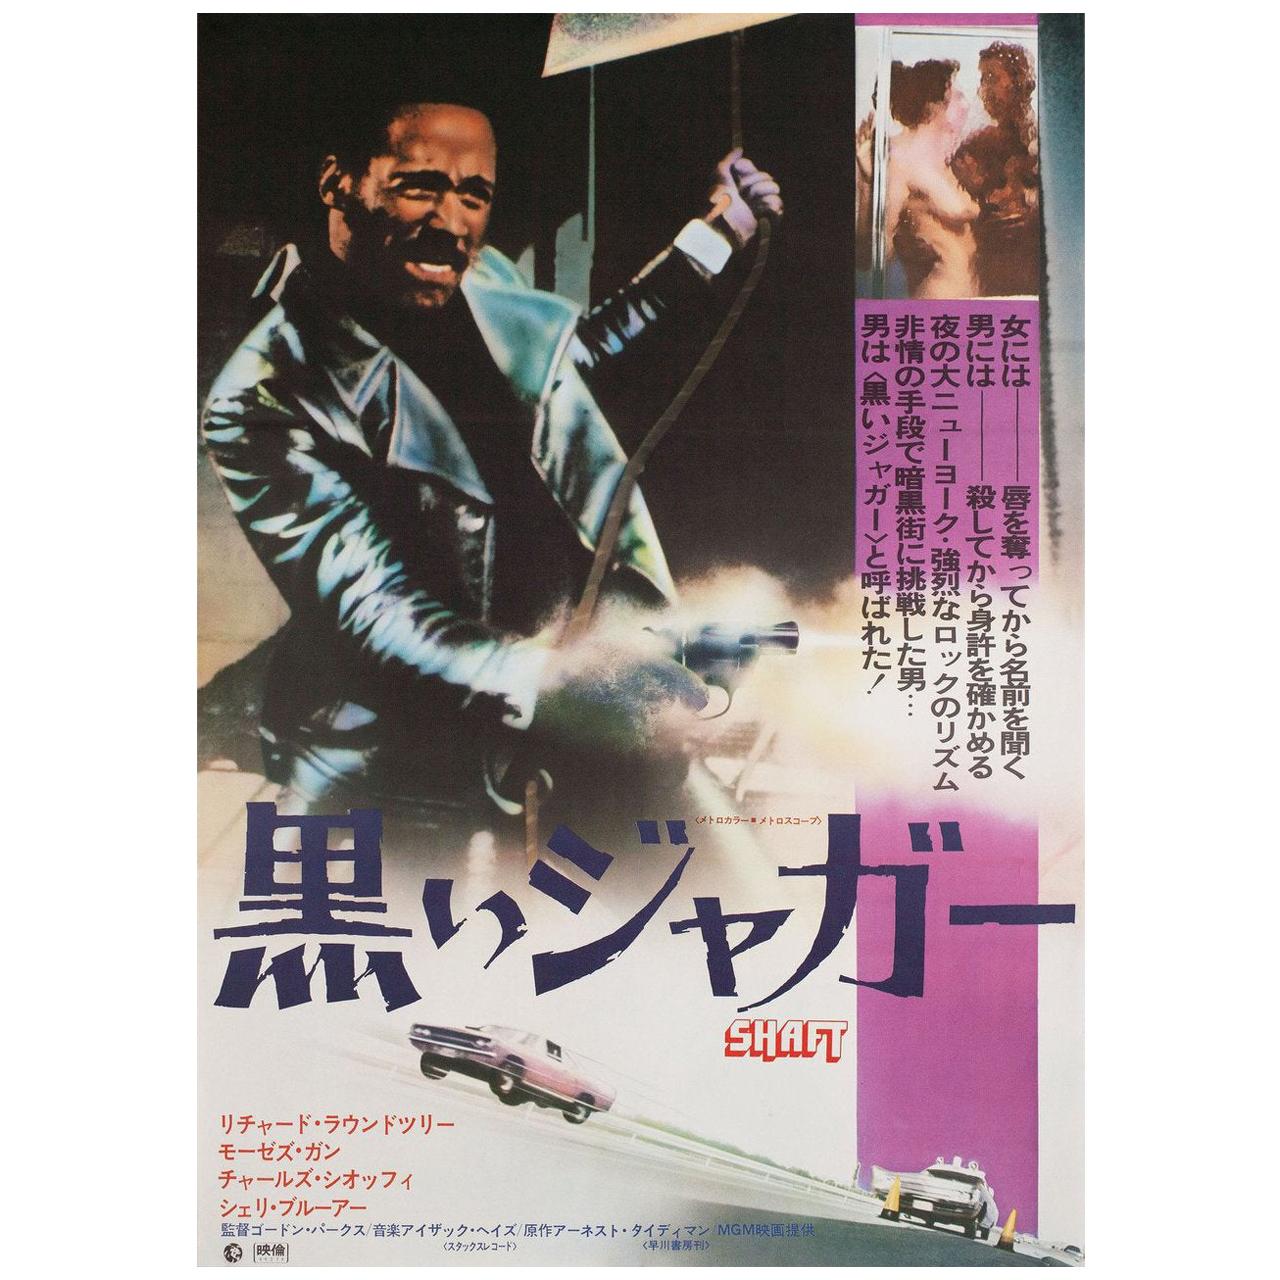 'Shaft' 1971 Japanese B2 Film Poster